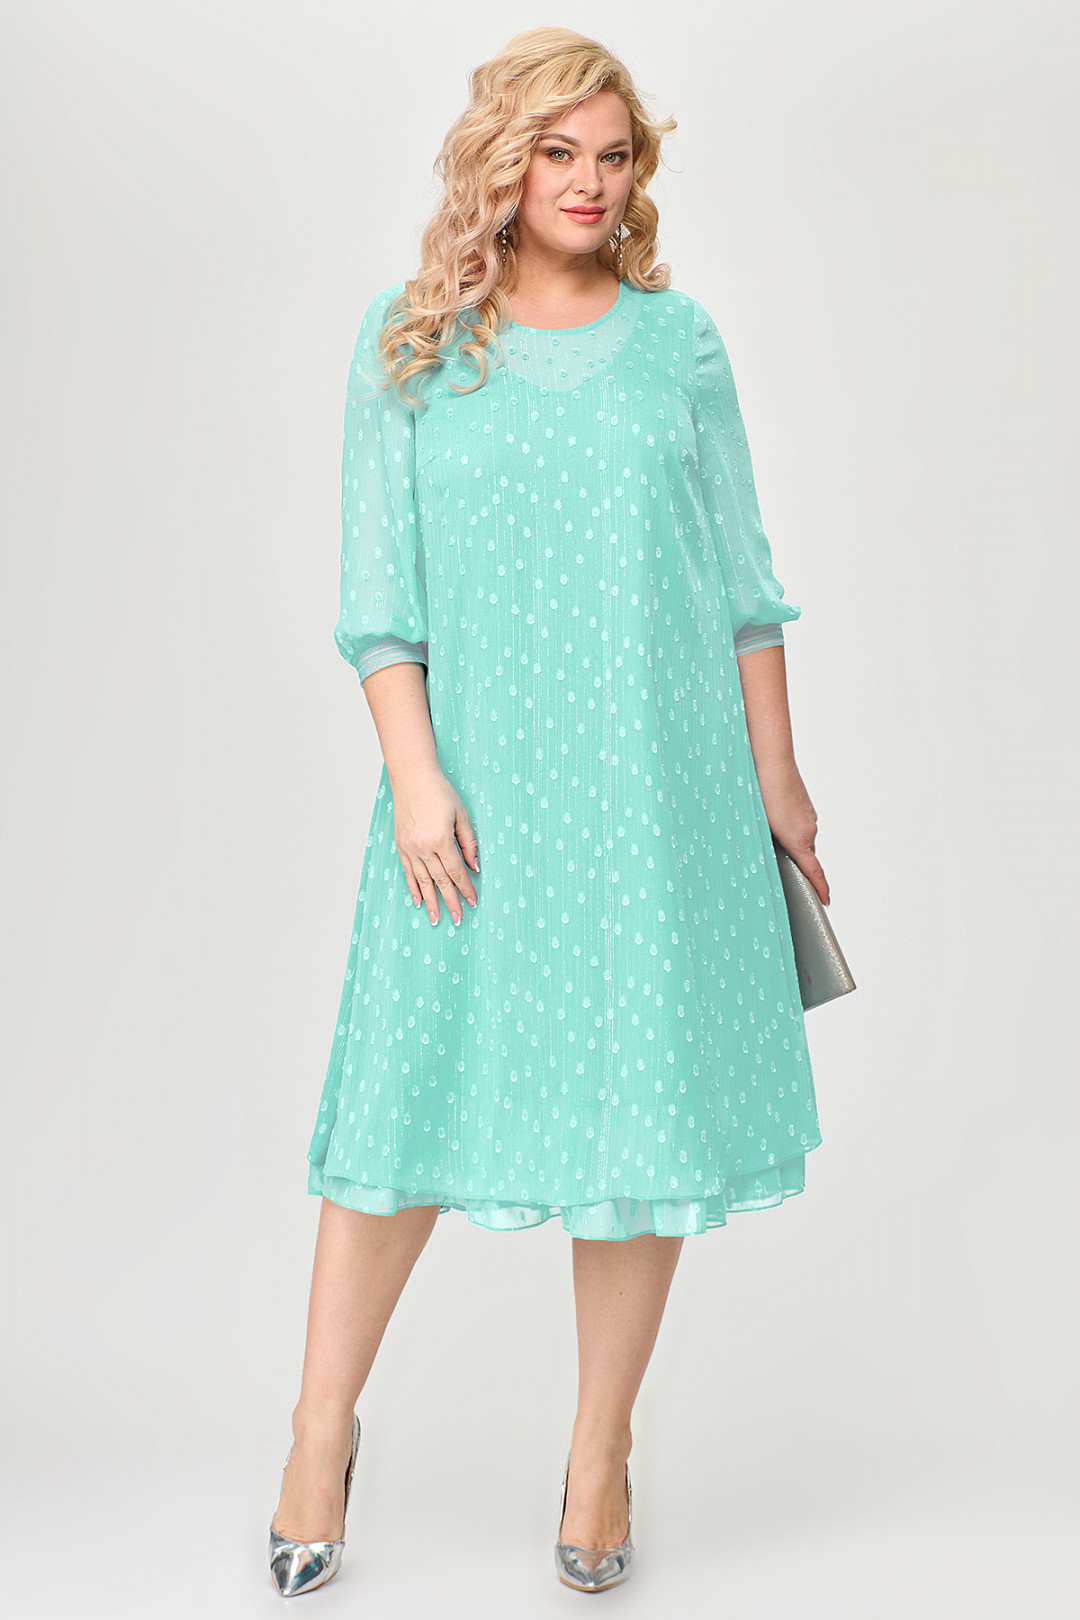 Платье ALGRANDA (Новелла Шарм) A3814-2-7